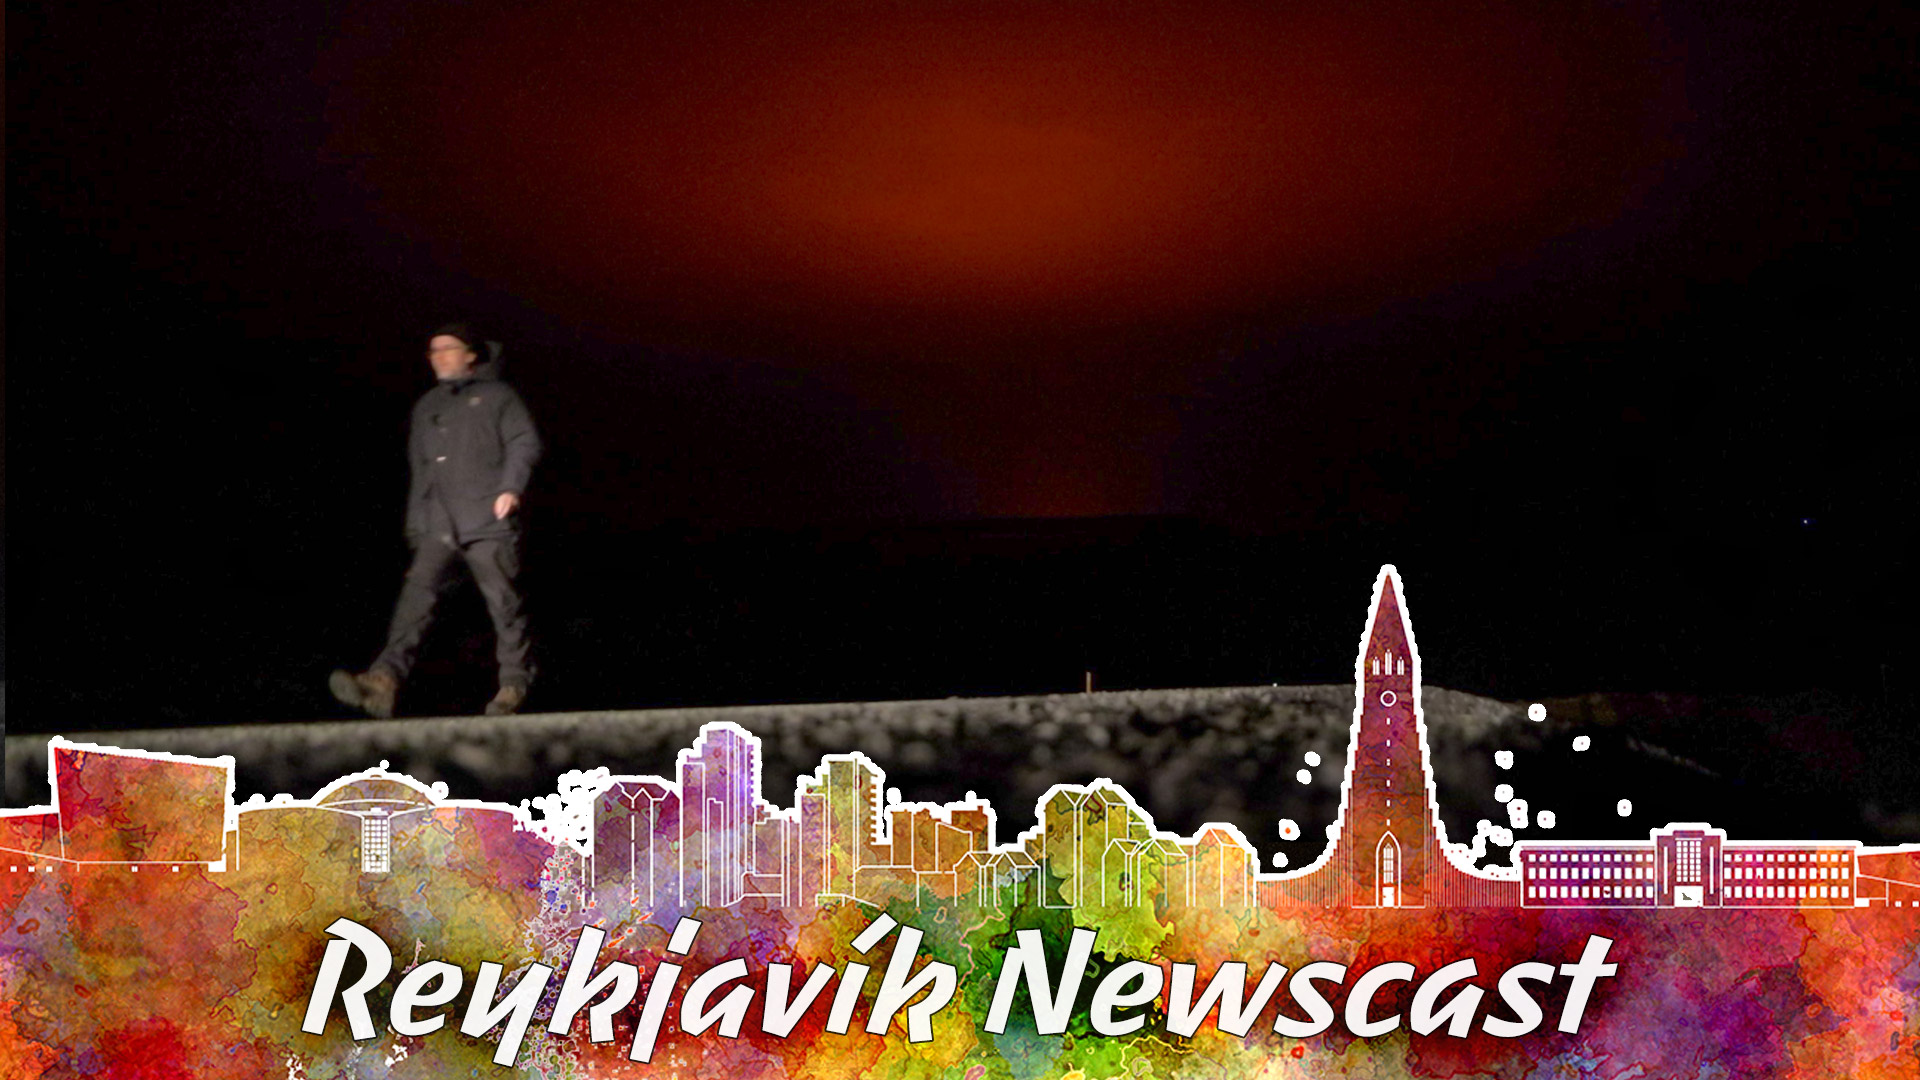 From Iceland – News magazine RVK # 85: Eruption has begun!